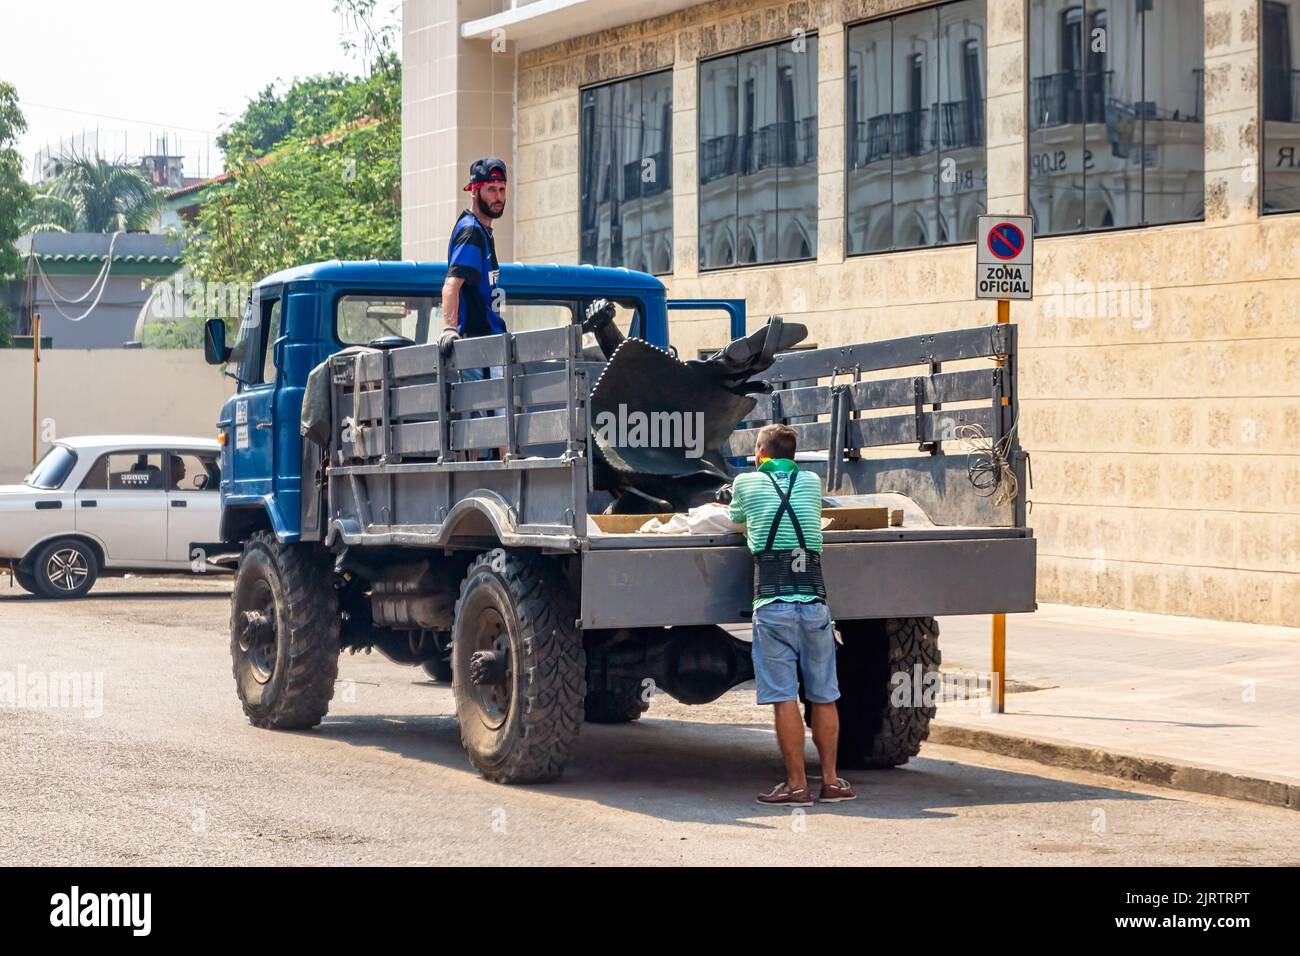 Kubanische Arbeiter auf der Rückseite eines veralteten russischen Lastwagens. Das Transportmittel wird in einer offiziellen Zone geparkt Stockfoto